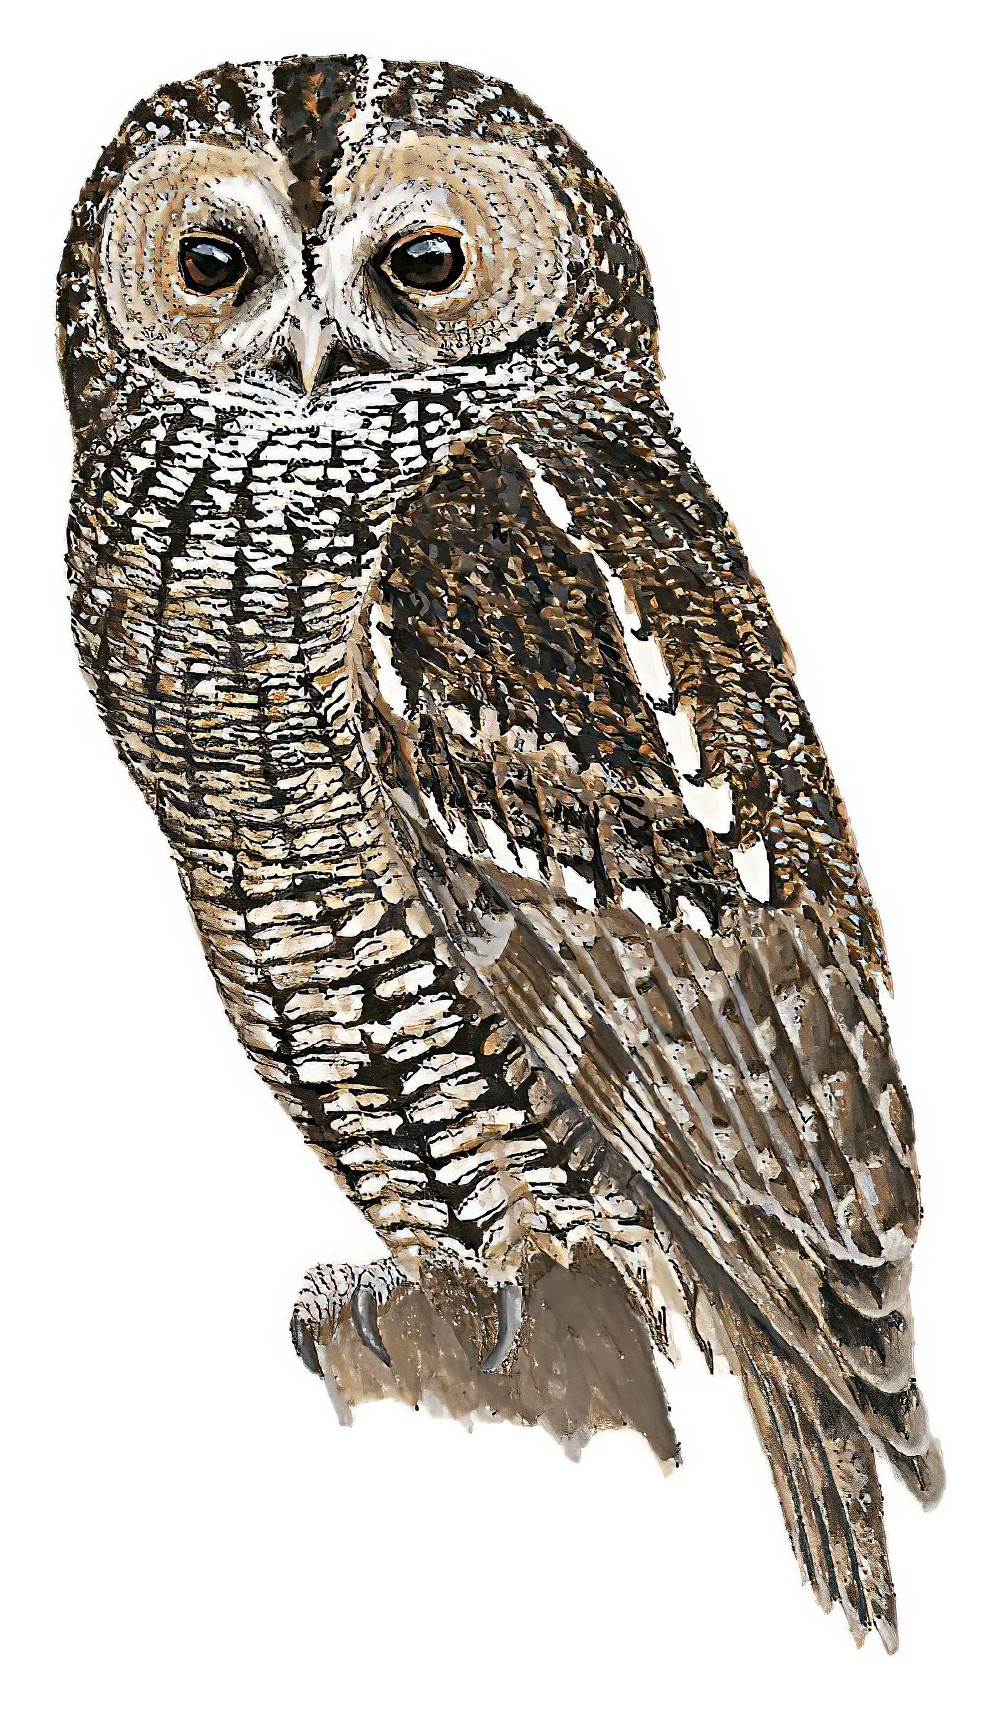 Himalayan Owl / Strix nivicolum